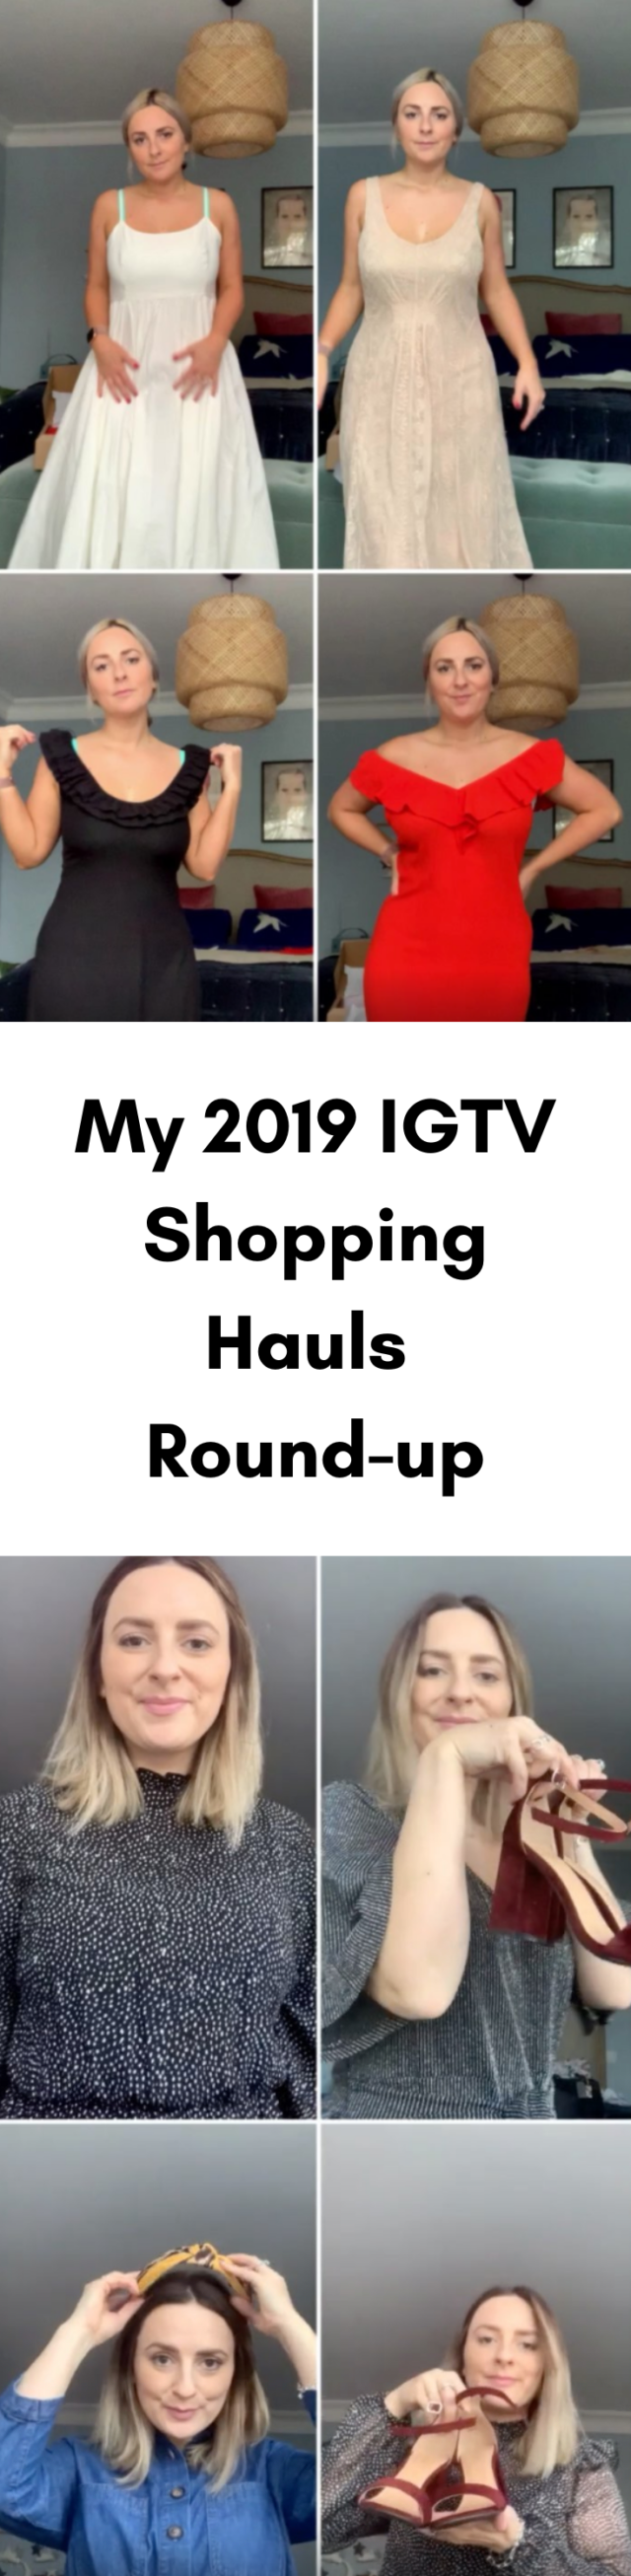 my-2019-IGTV-shopping-hauls-round-up